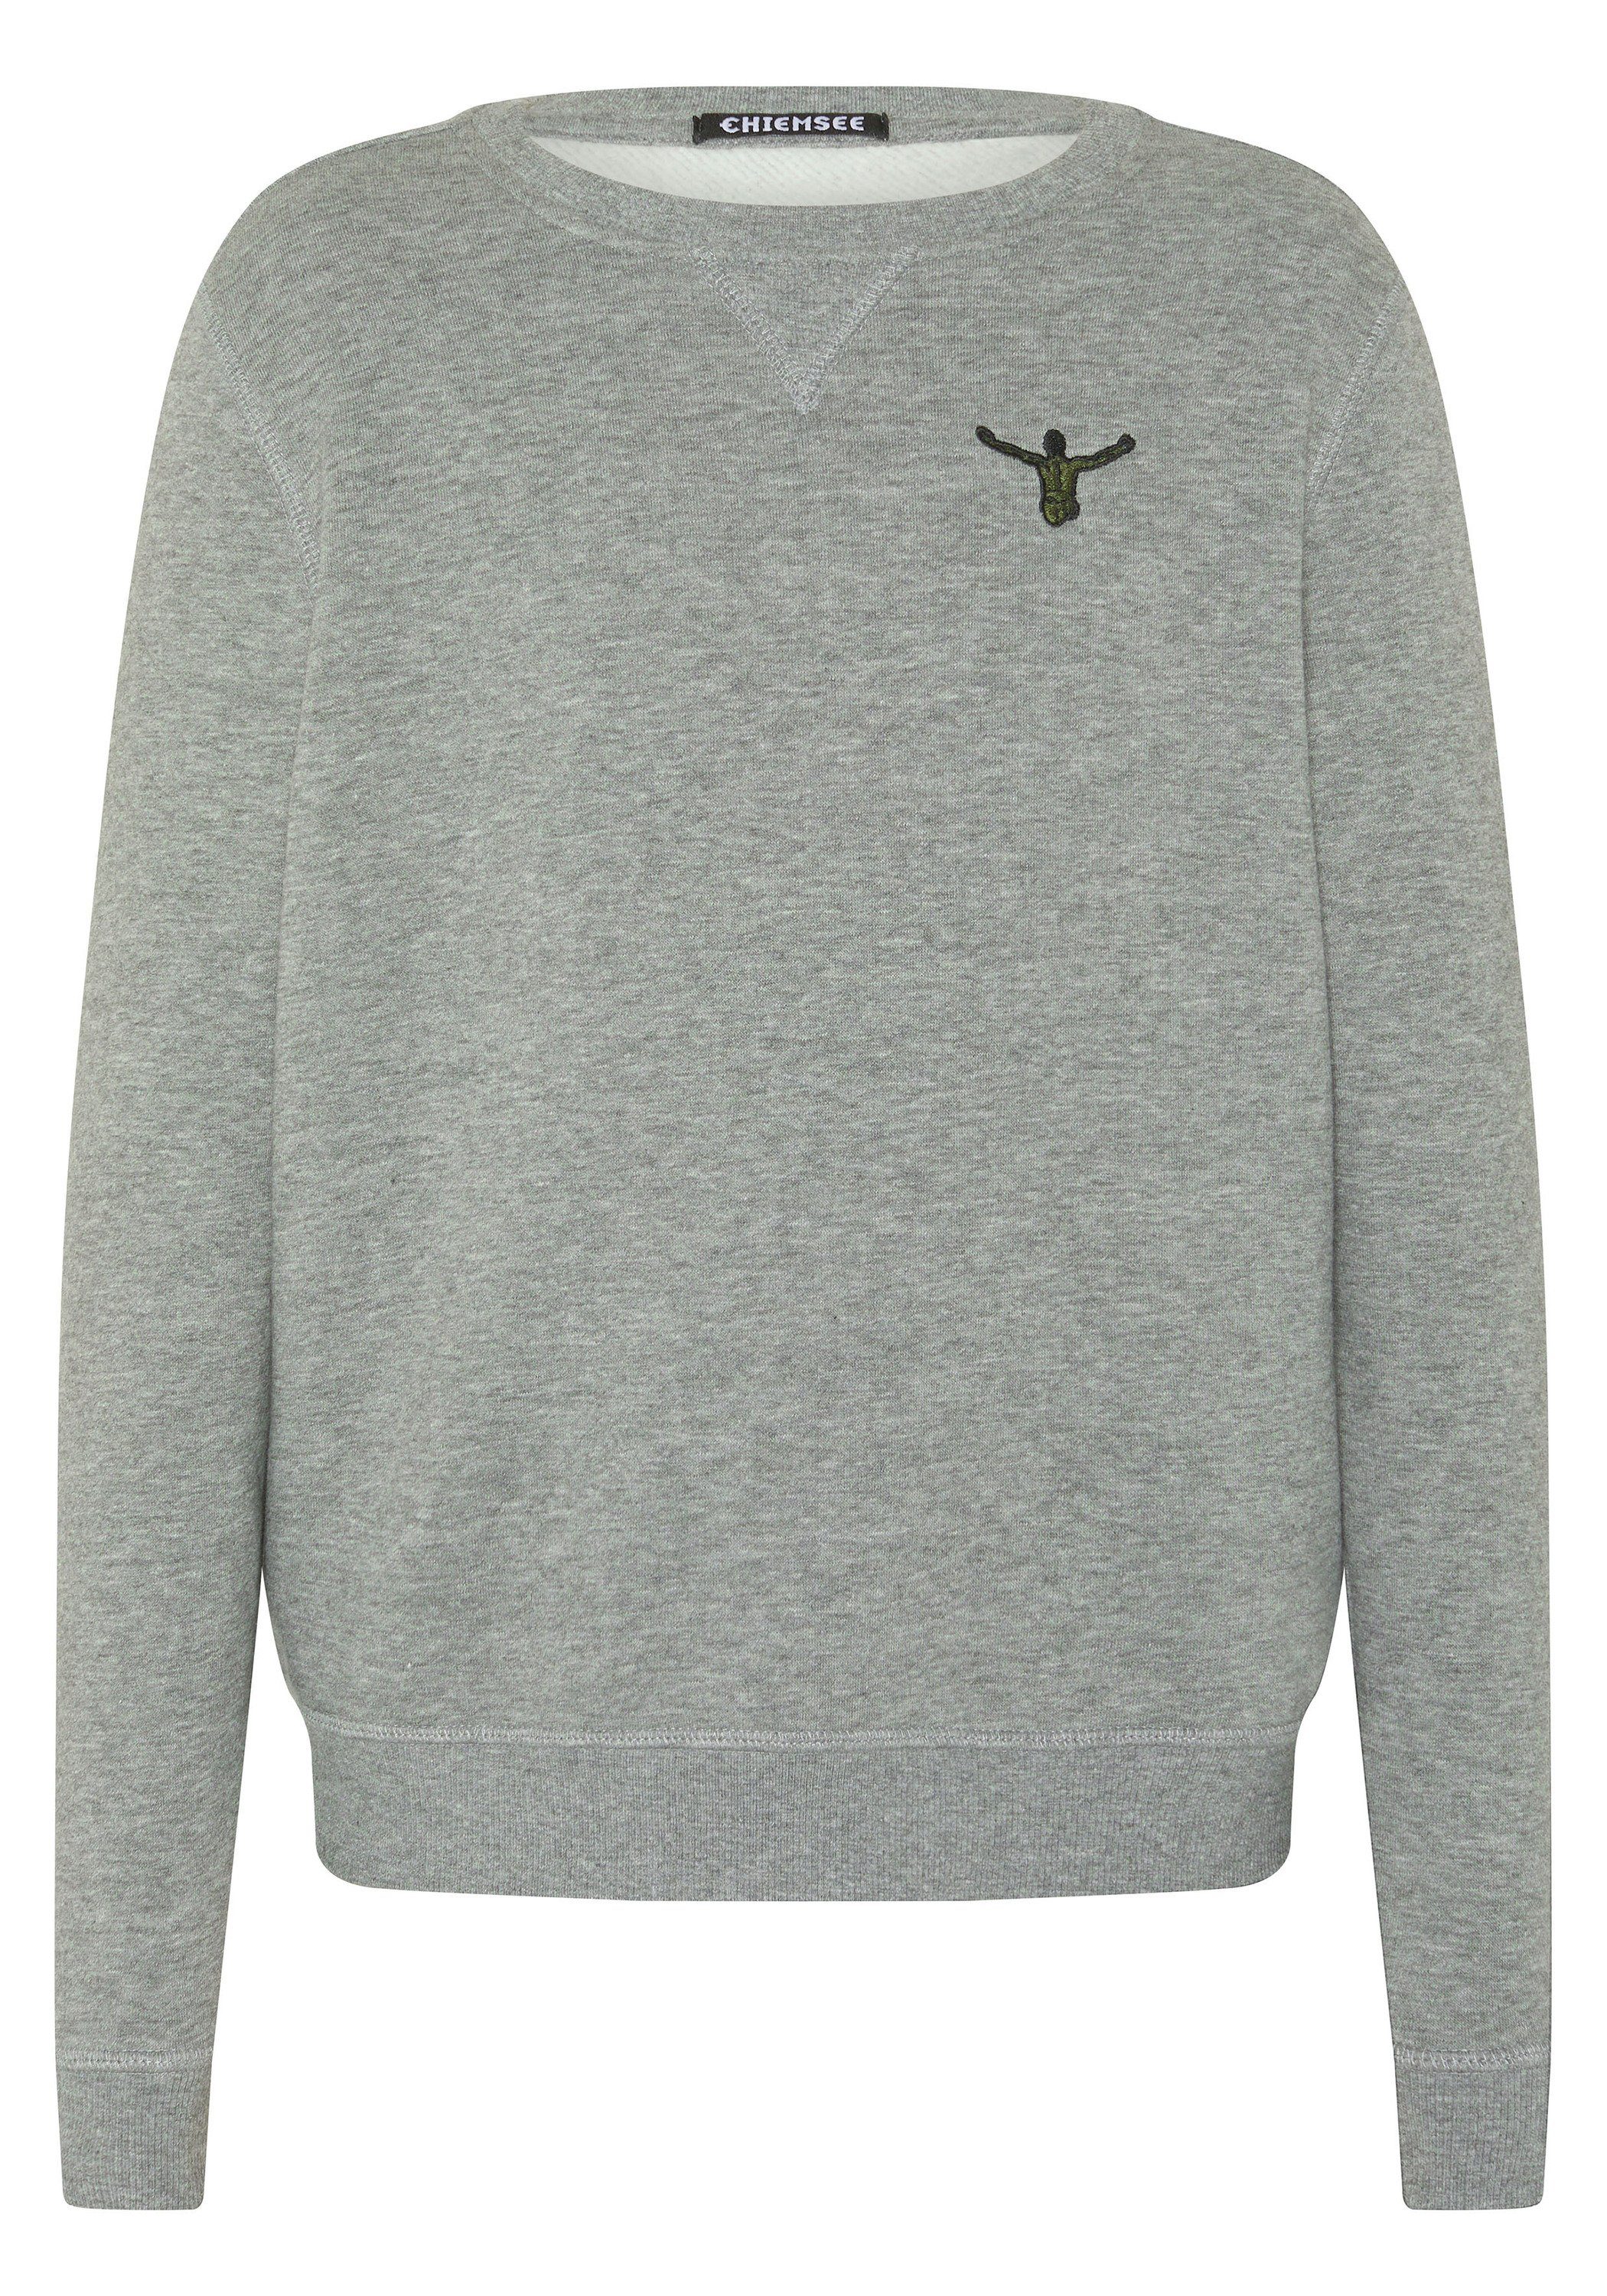 17-4402M mit Chiemsee Neutral Sweatshirt Sweater 1 Melange Jumper-Print Gray